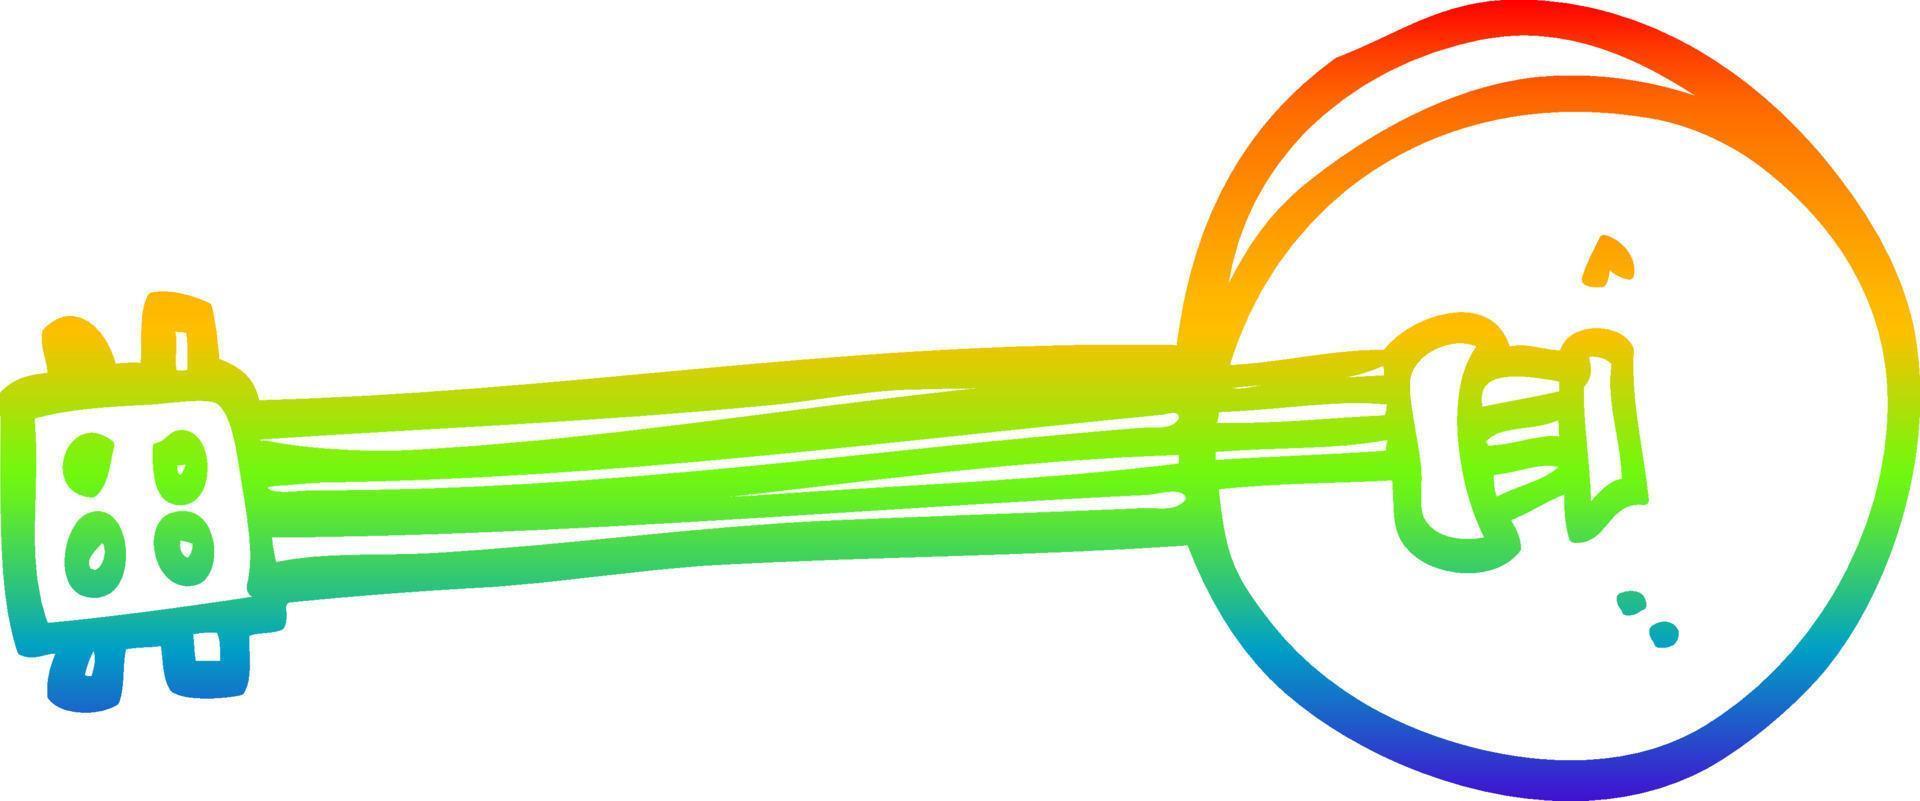 regnbågsgradient linjeteckning tecknad banjo vektor